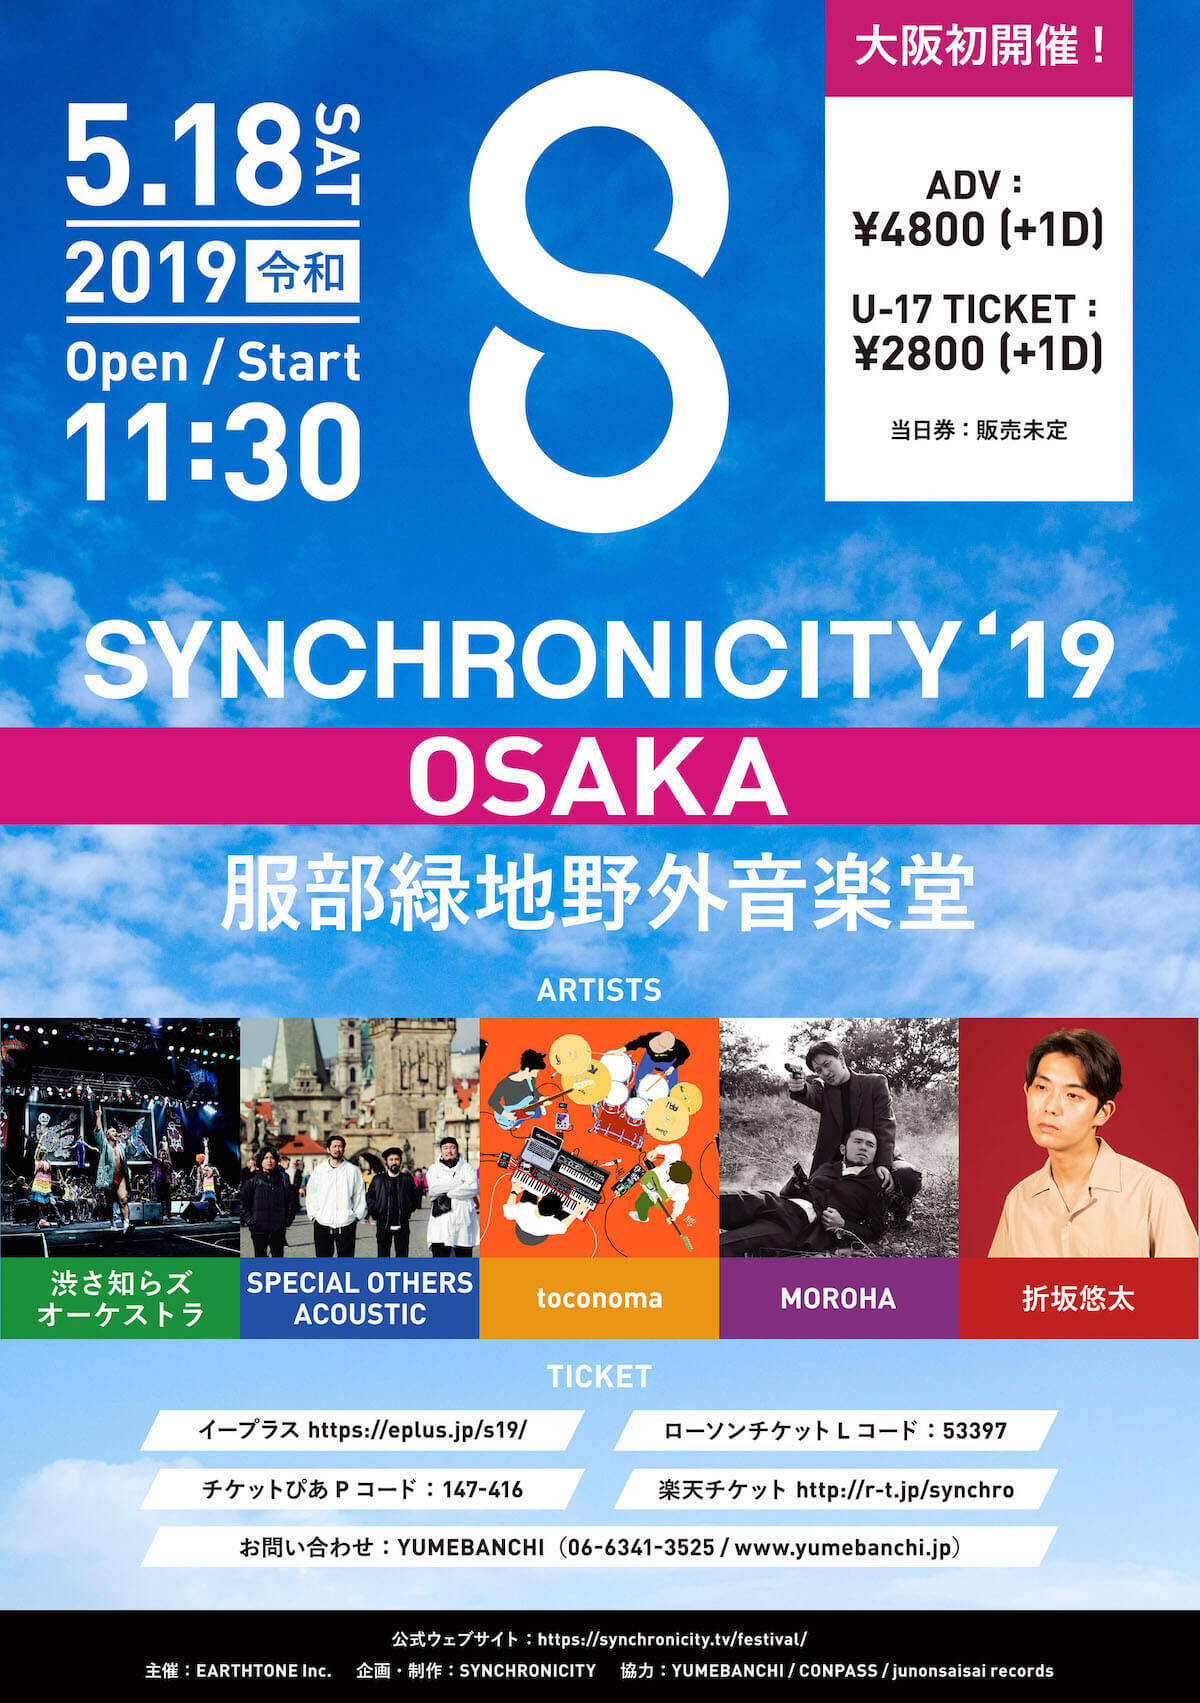 東京と同じく渋さ知らズオーケストラがトリ！＜SYNCHRONICITY’19 OSAKA＞のタイムテーブル発表